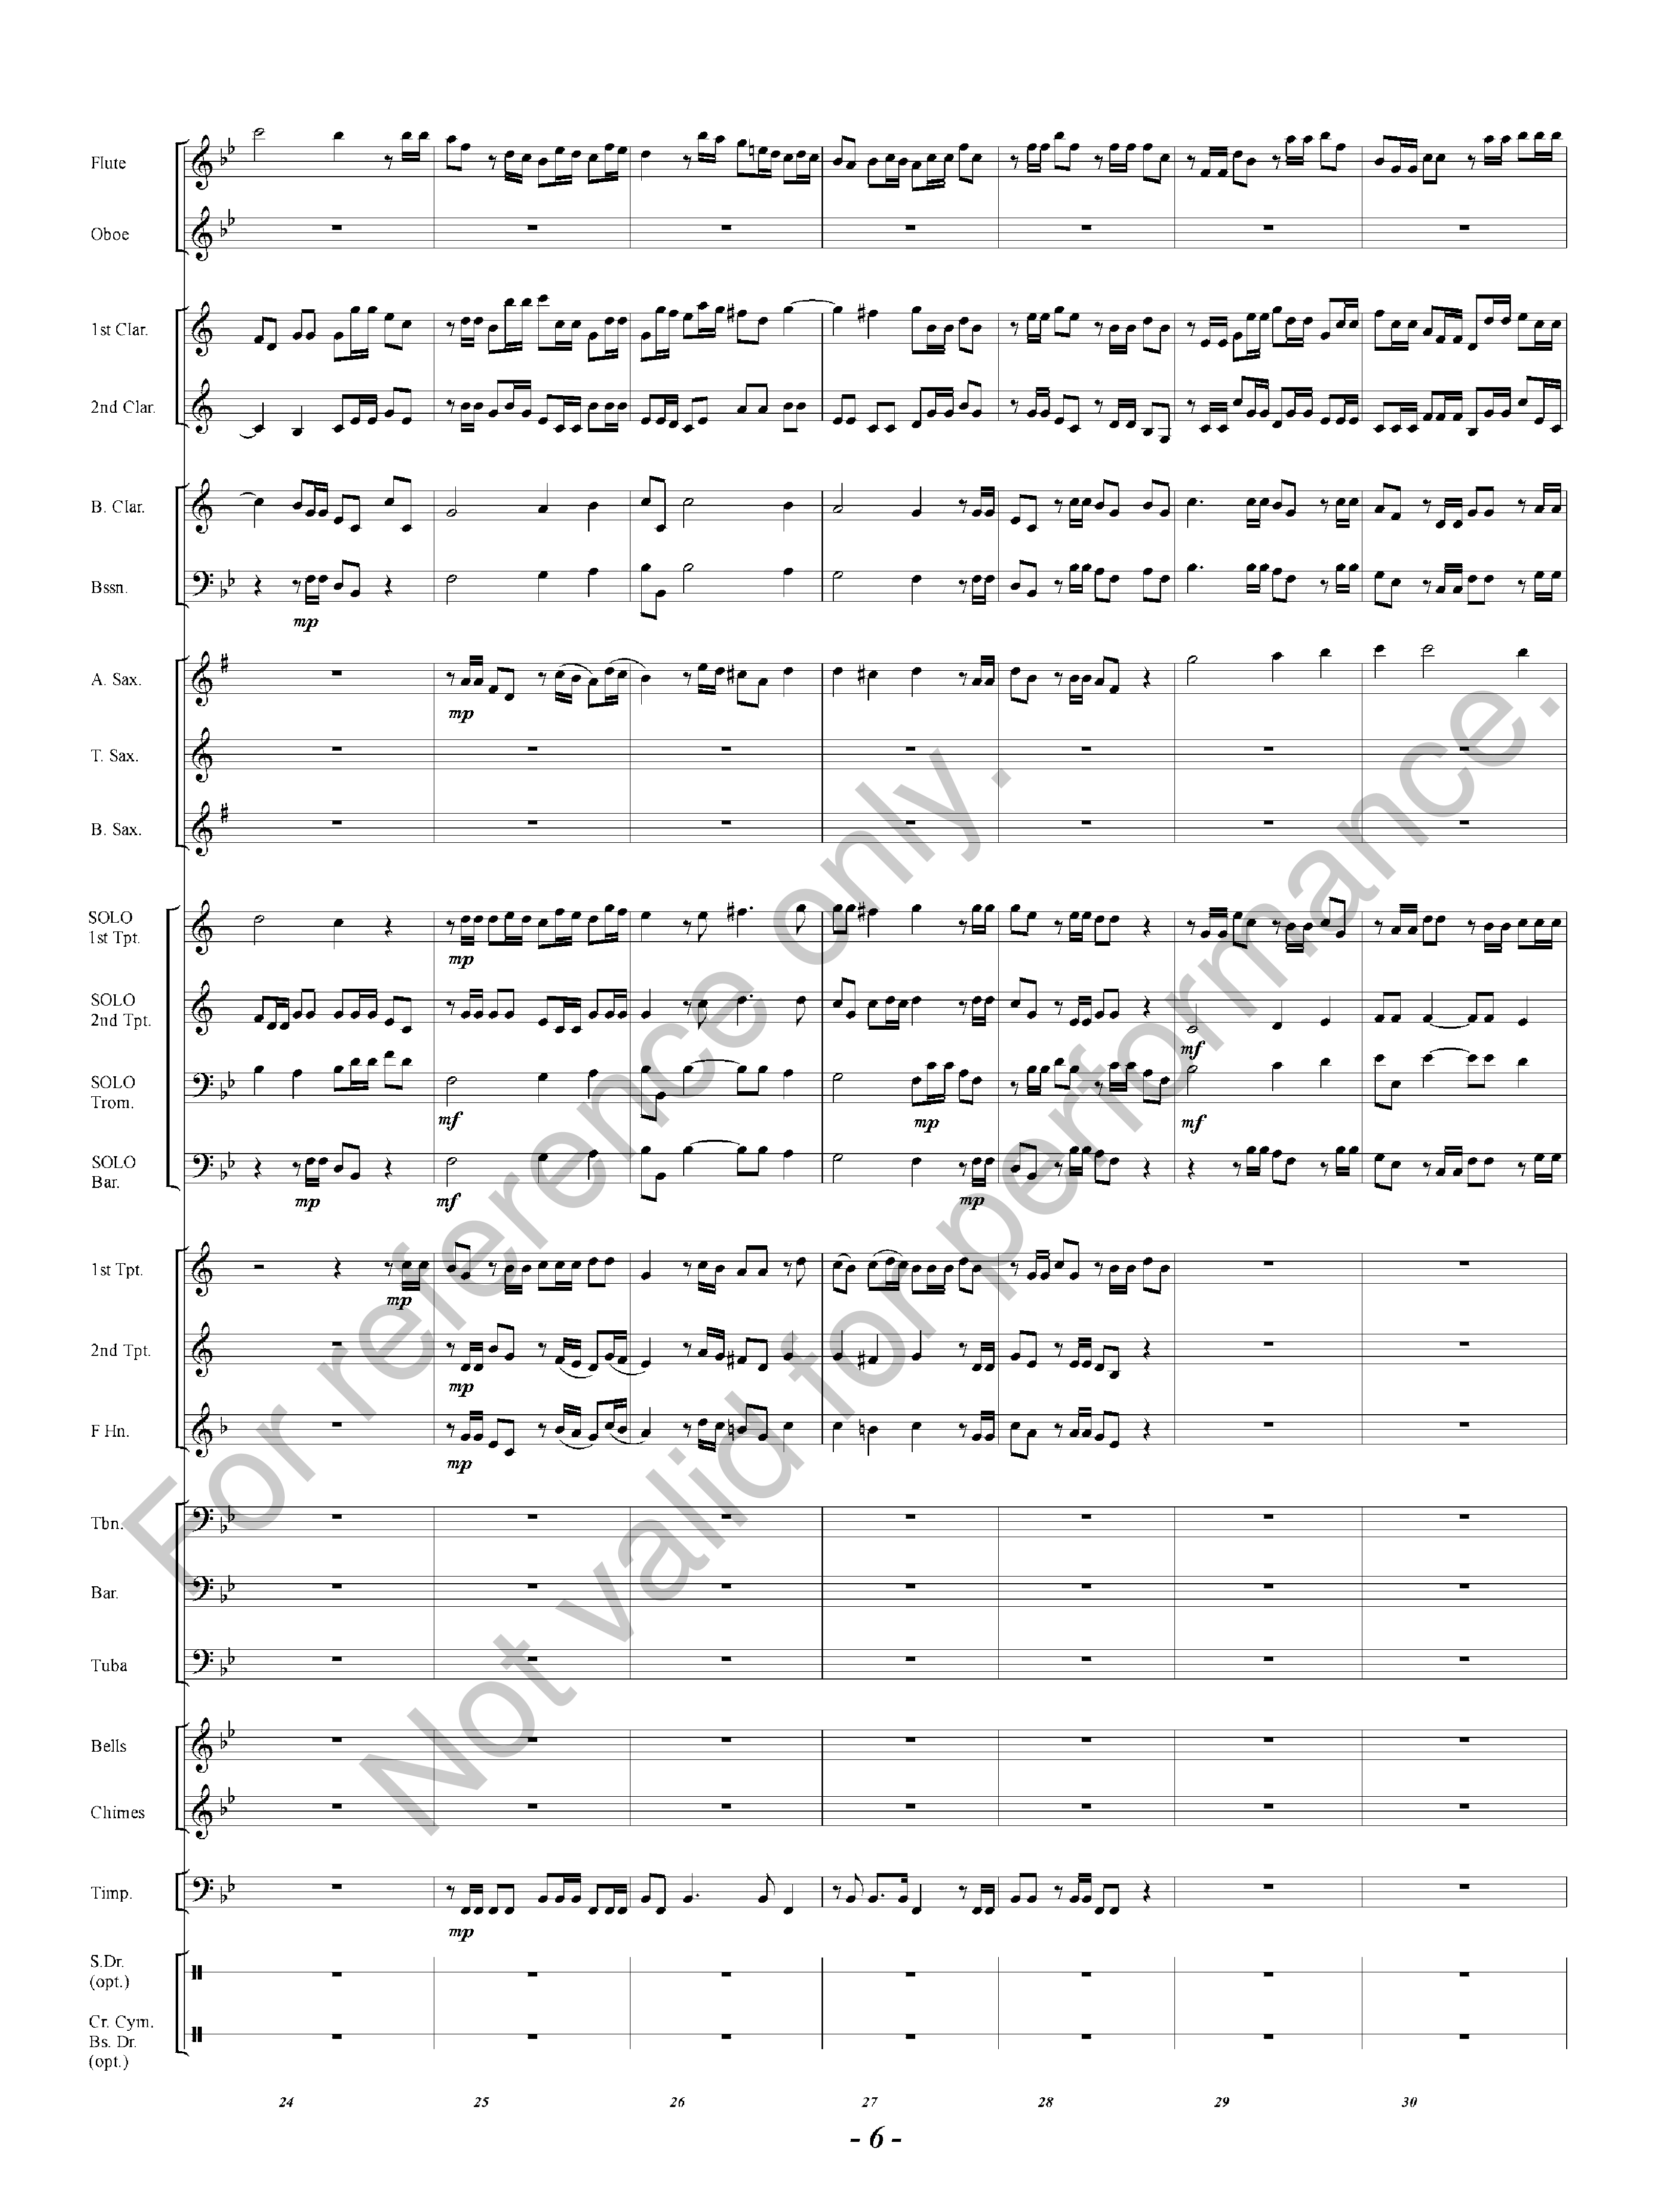 Hallelujah Chorus by George Frederic Handel/arr. | J.W. Pepper Sheet Music